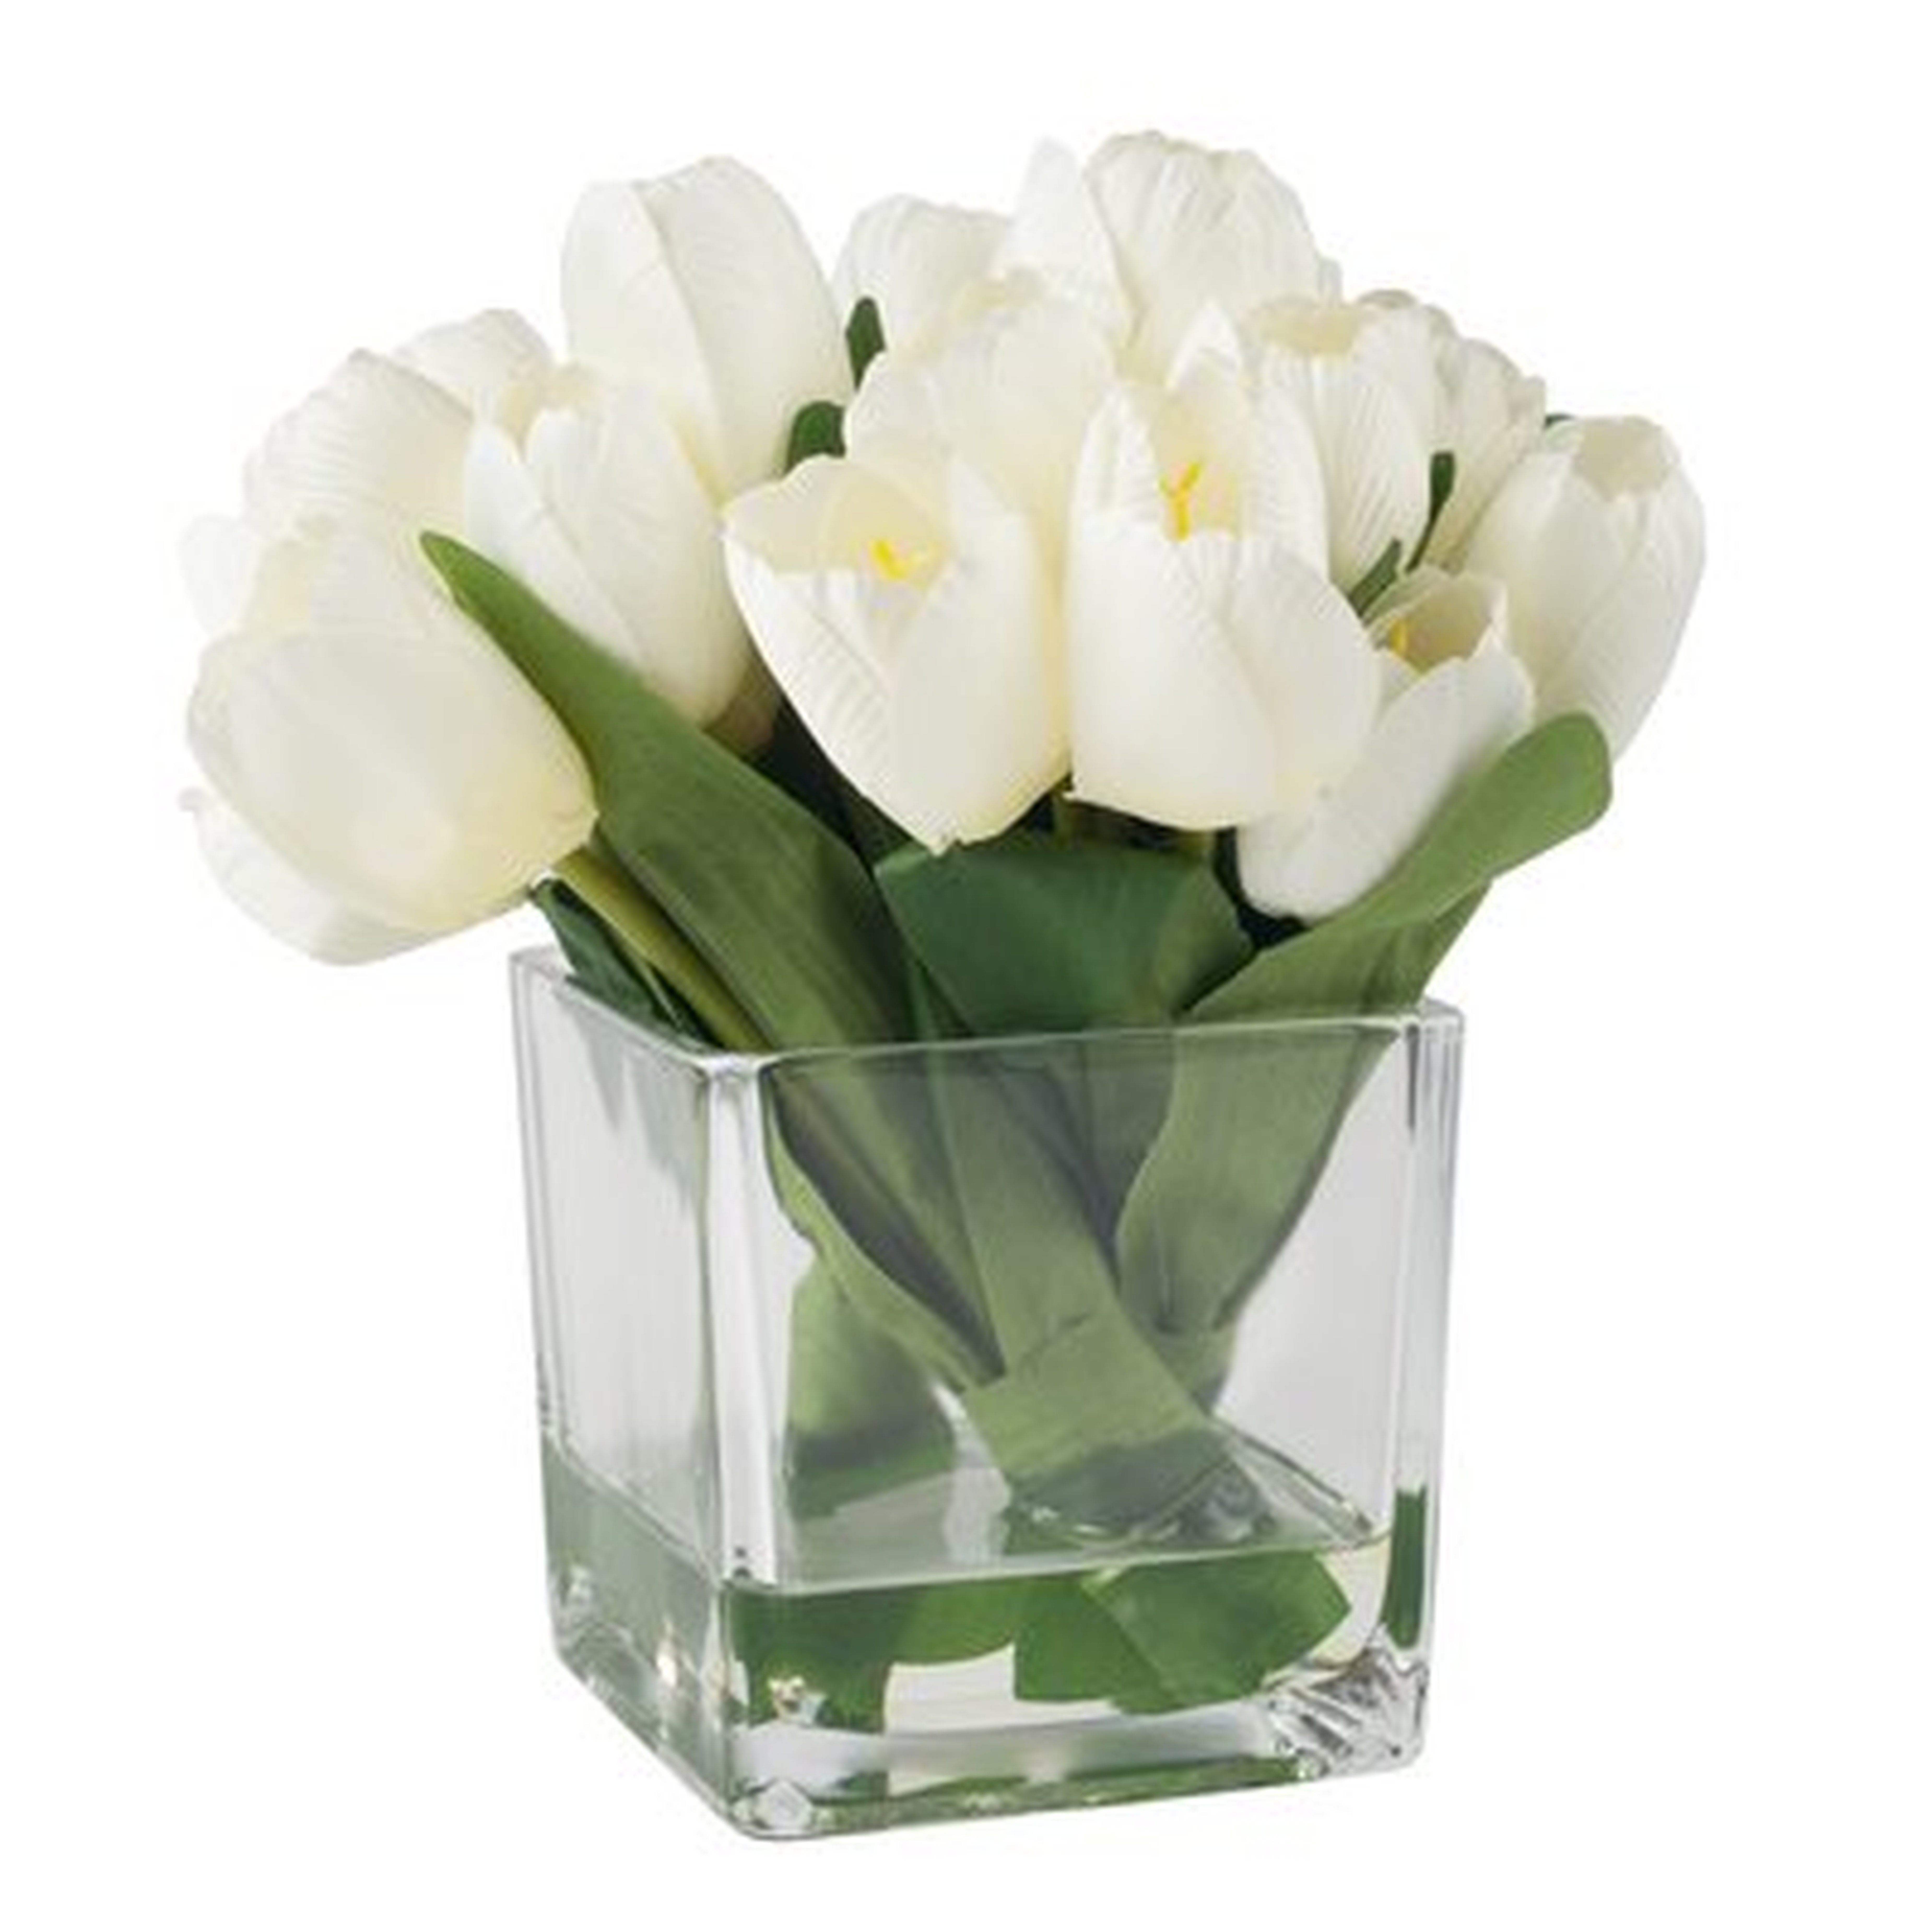 Tulip Floral Arrangement in Glass Vase - Wayfair